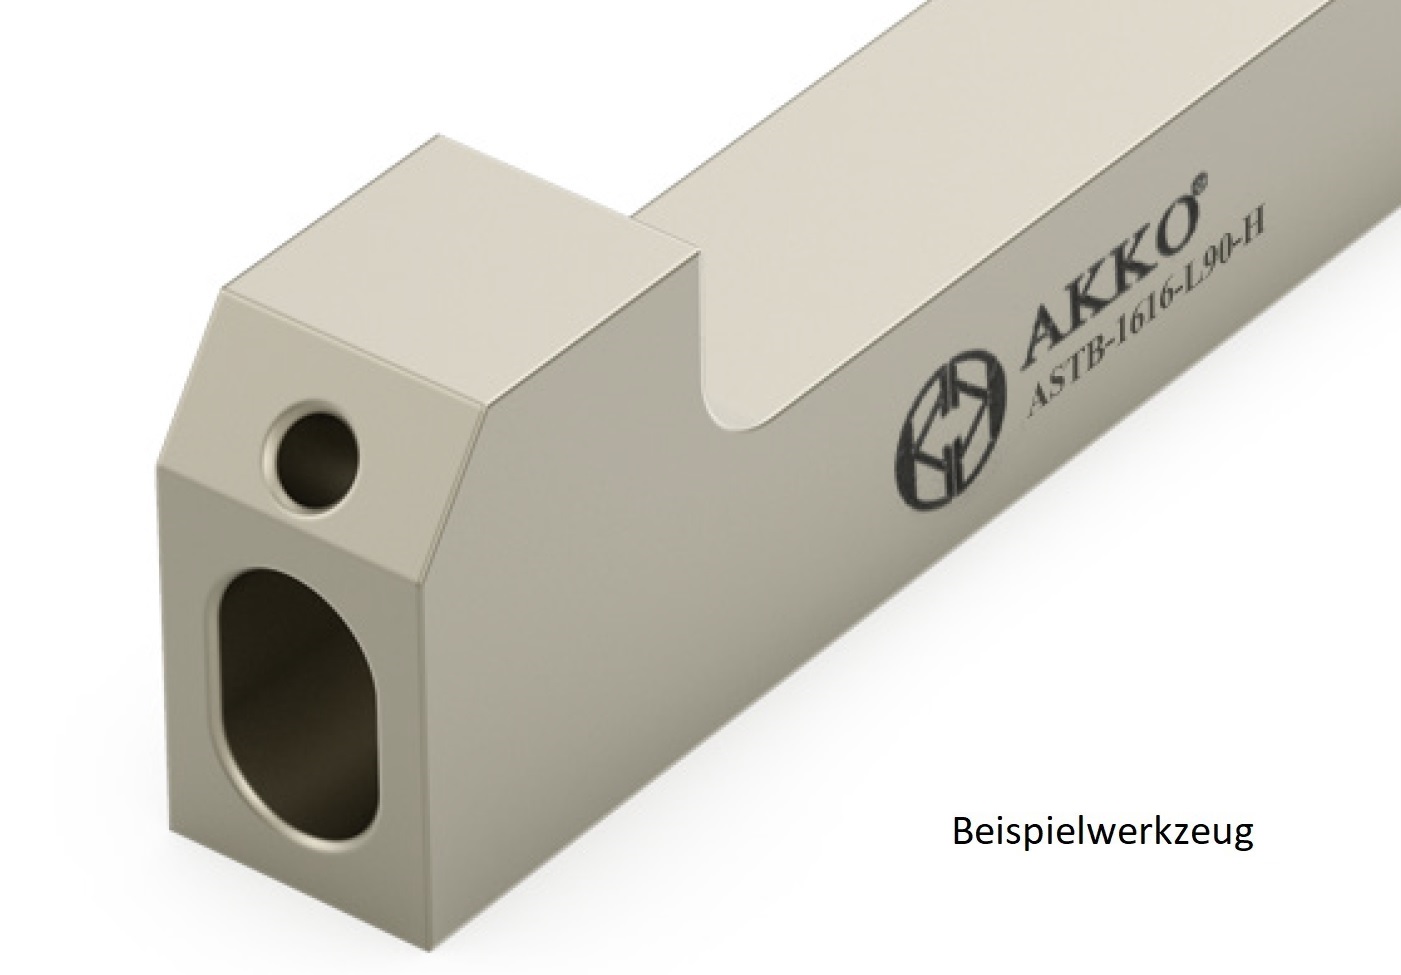 AKKO-Grundhalter für modulares Langdrehautomaten-Werkzeug SEC-tools
Schaftgröße 16 x 16 mm, mit Innenkühlung